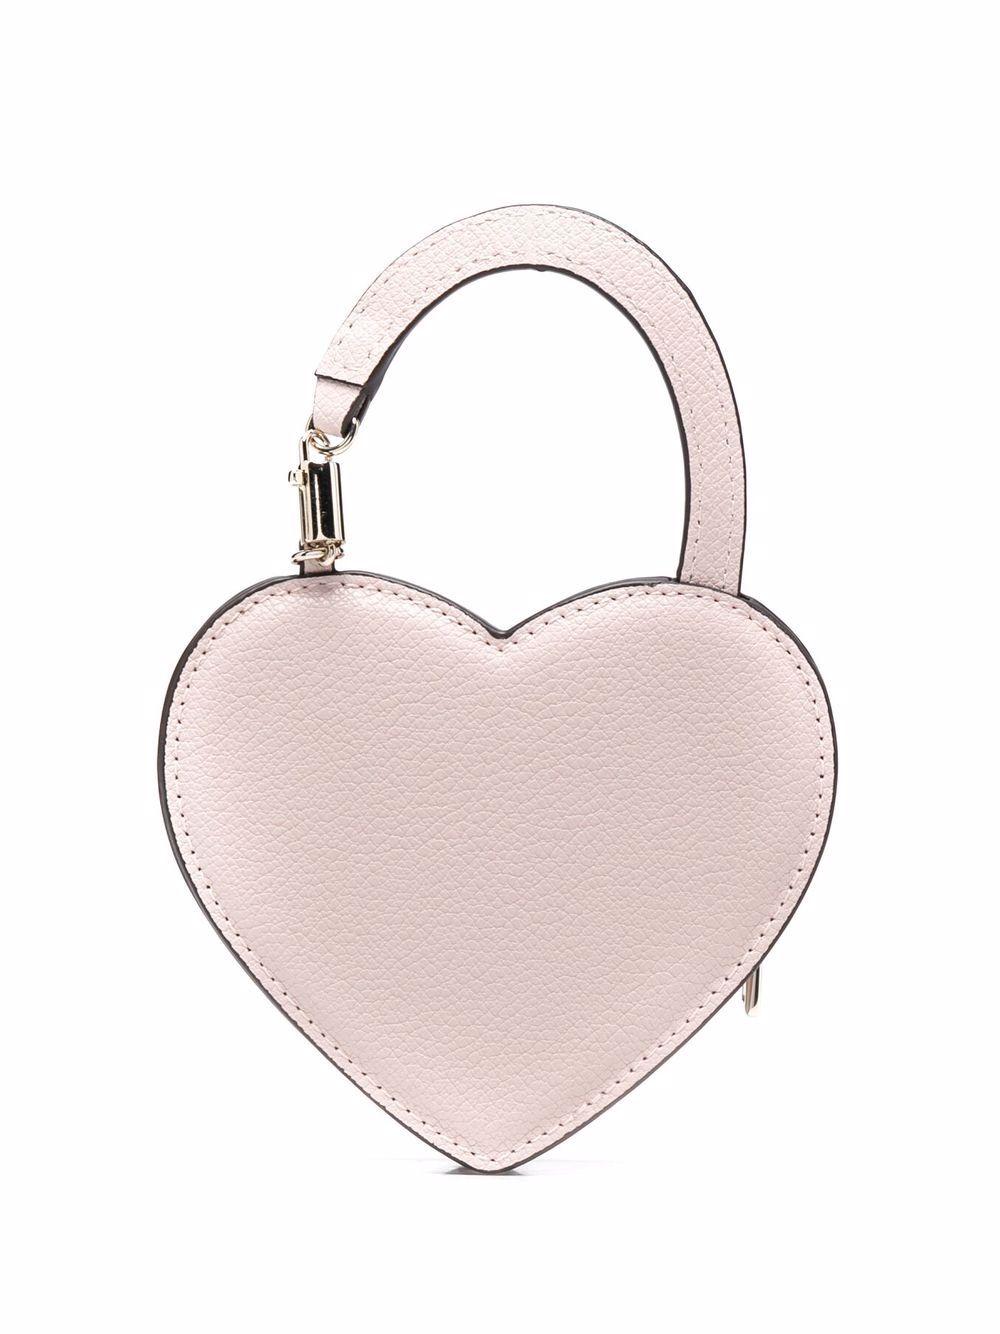 Furla Classic Case Heart Shaped Coin Purse Bag Charm Cognac Brown BX0306  NWT